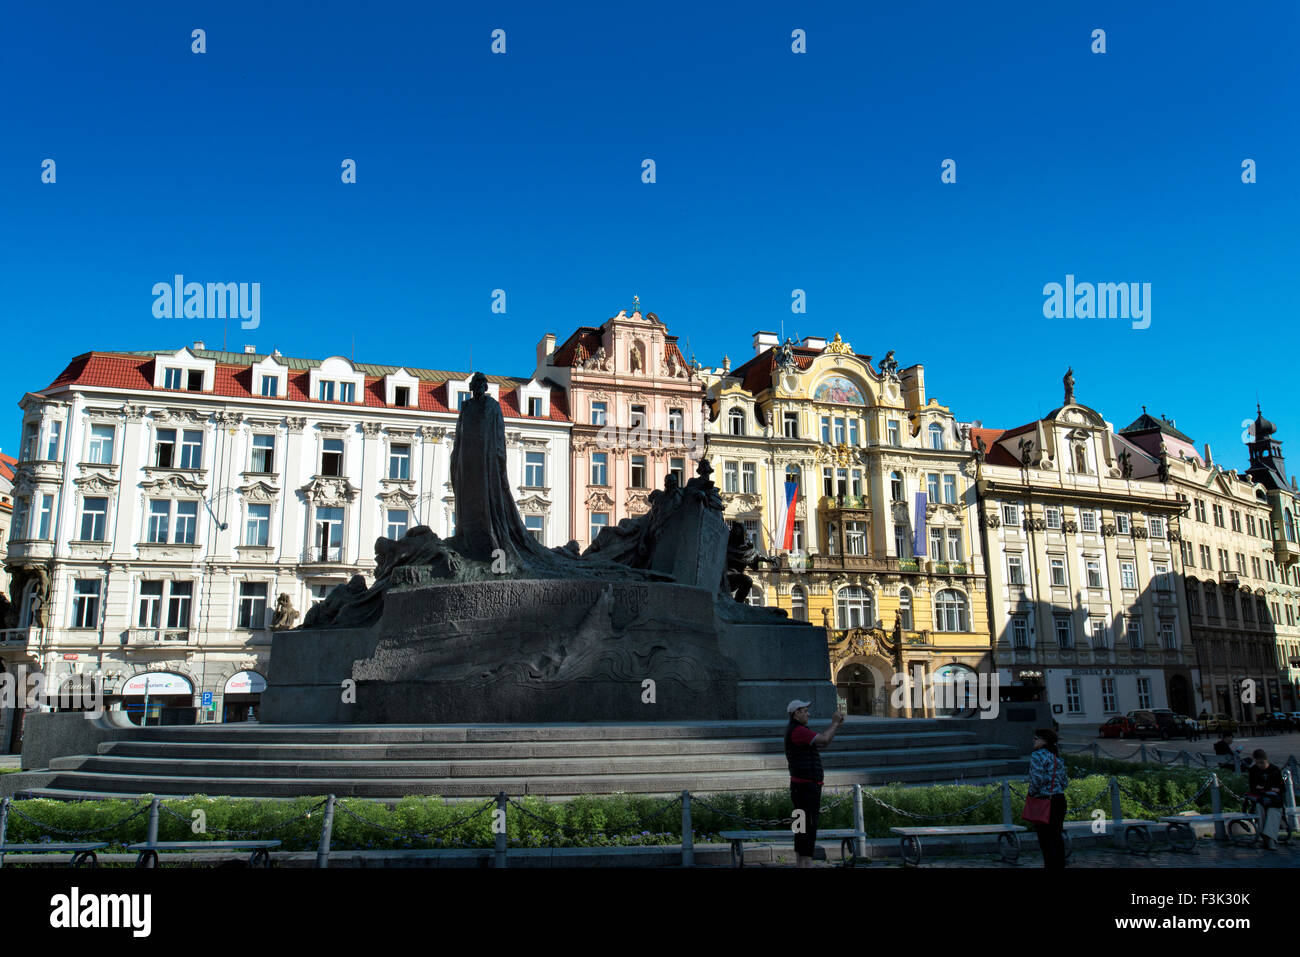 Jan Hus Monument, Place de la vieille ville, Côté Nord, Ministerstvo pro mistni, Prague République Tchèque Banque D'Images